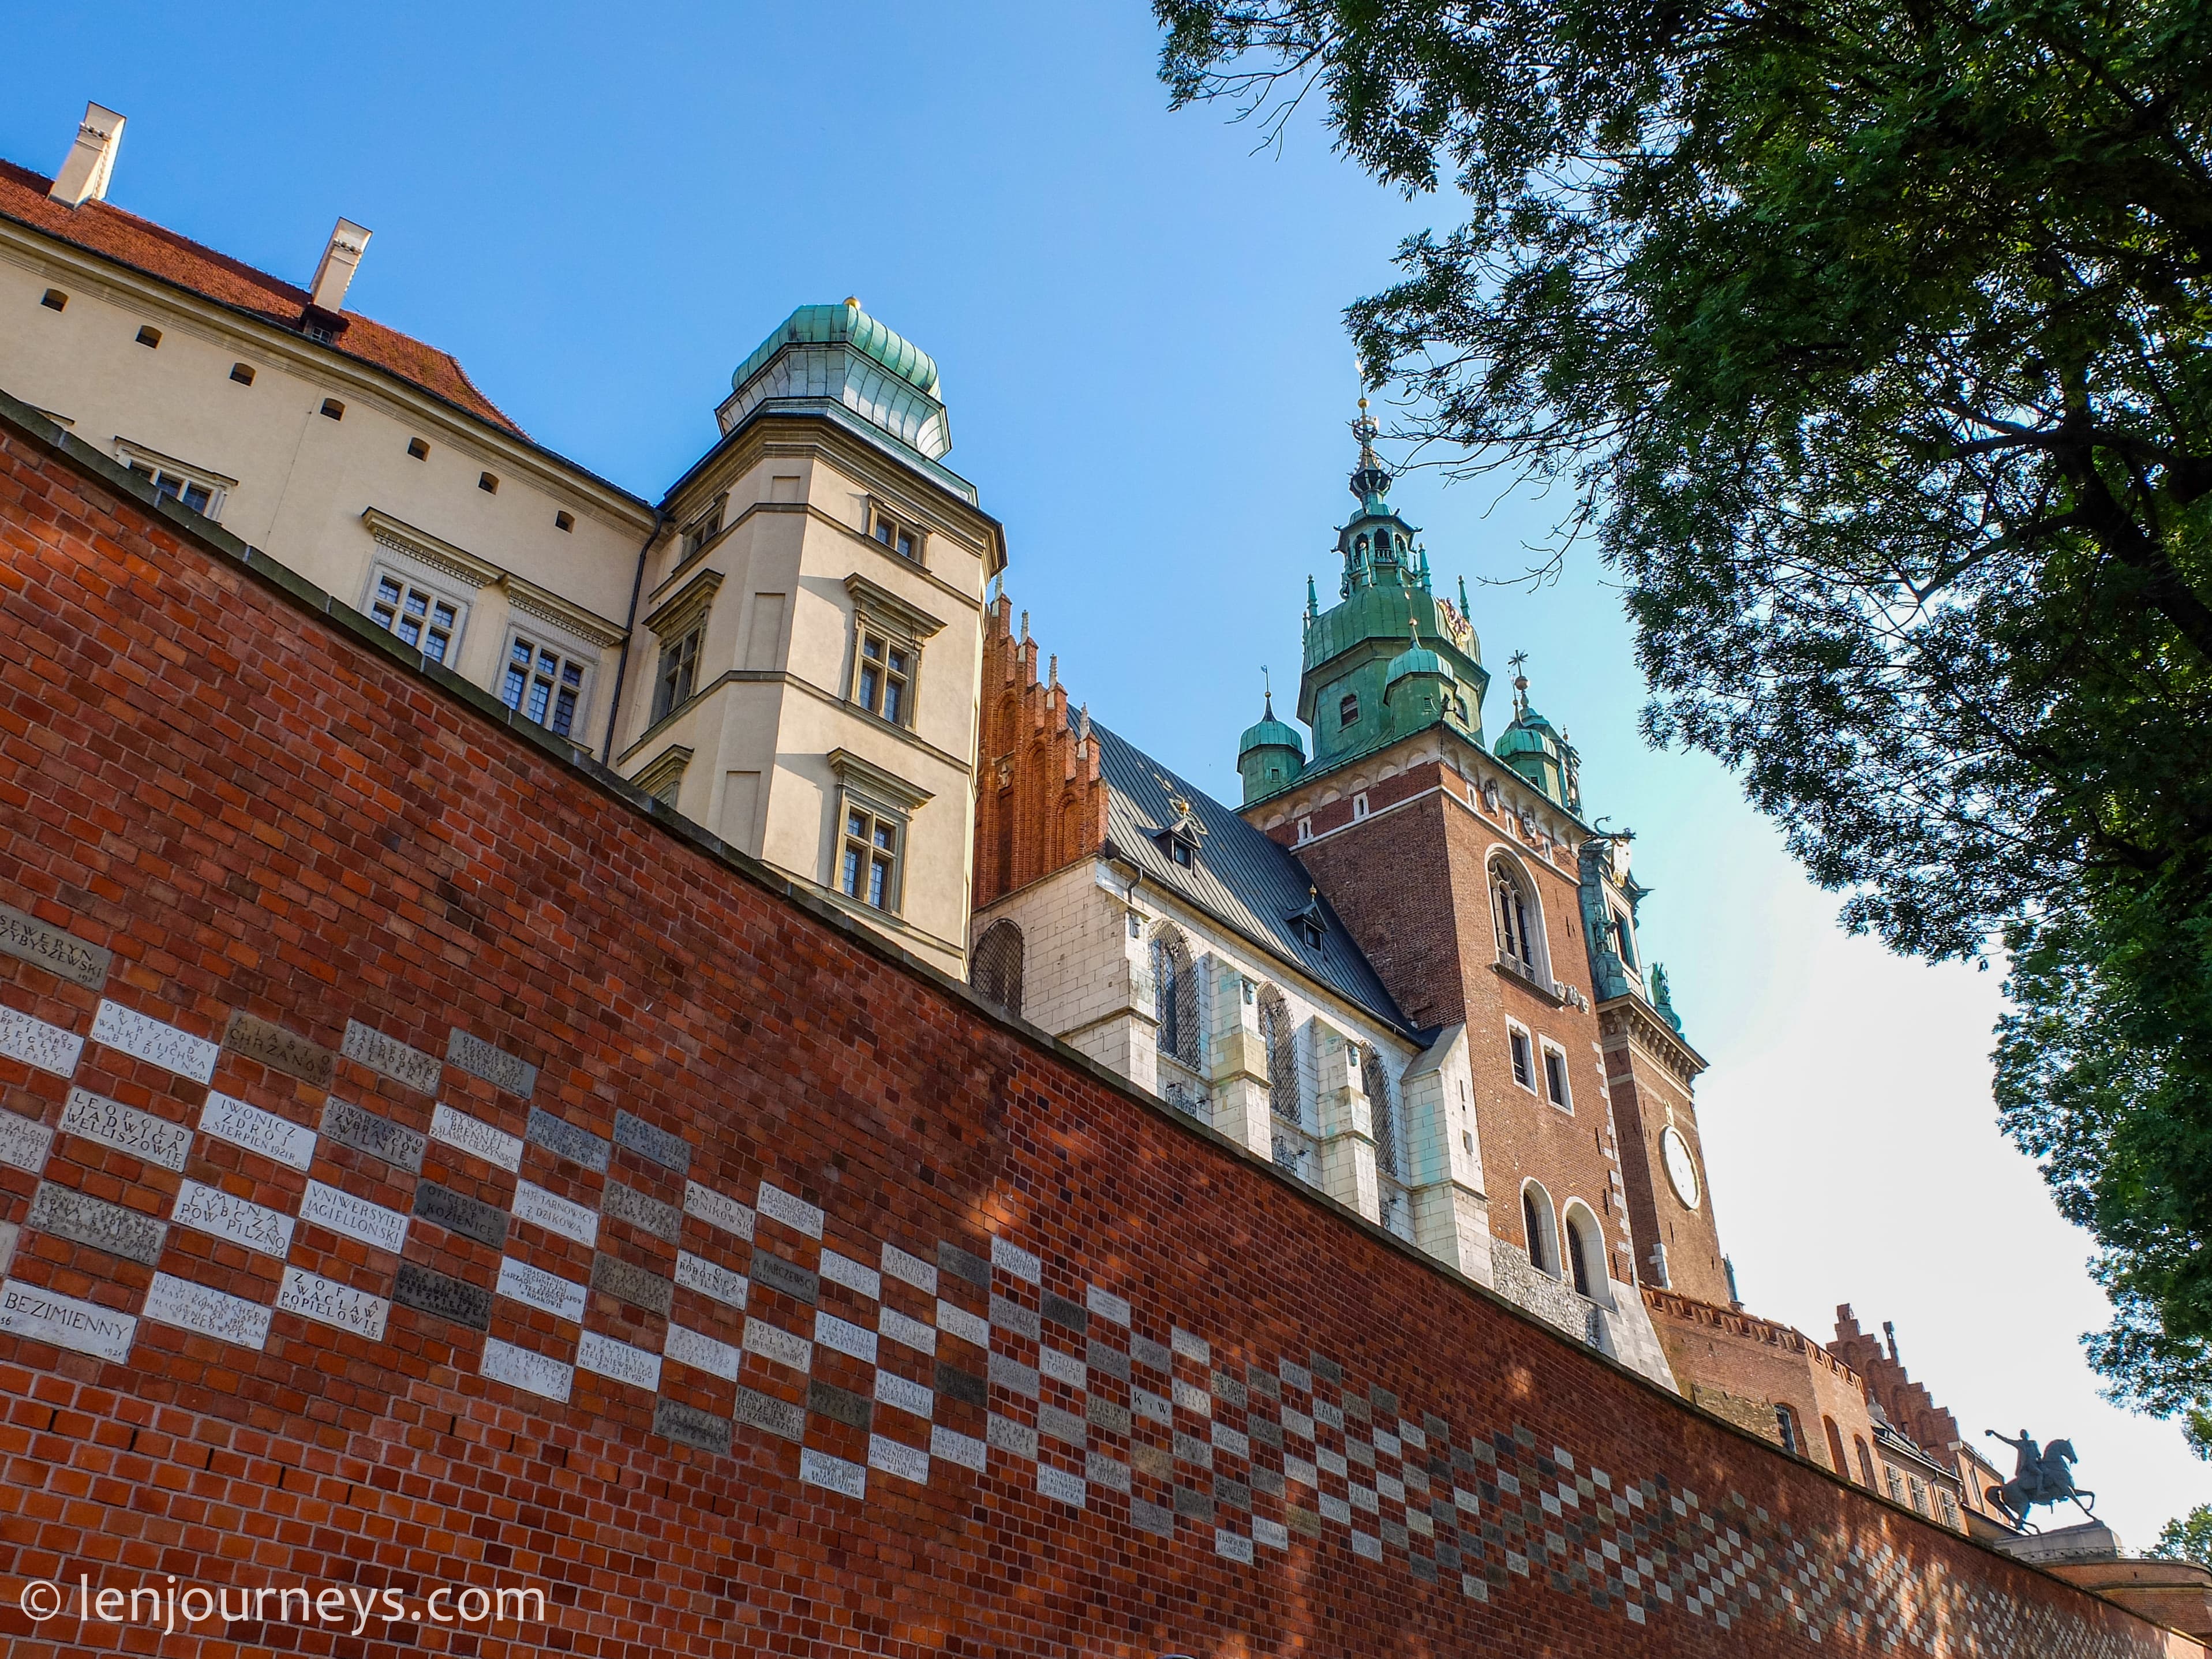 The wall of Wawel Castle, Krakow